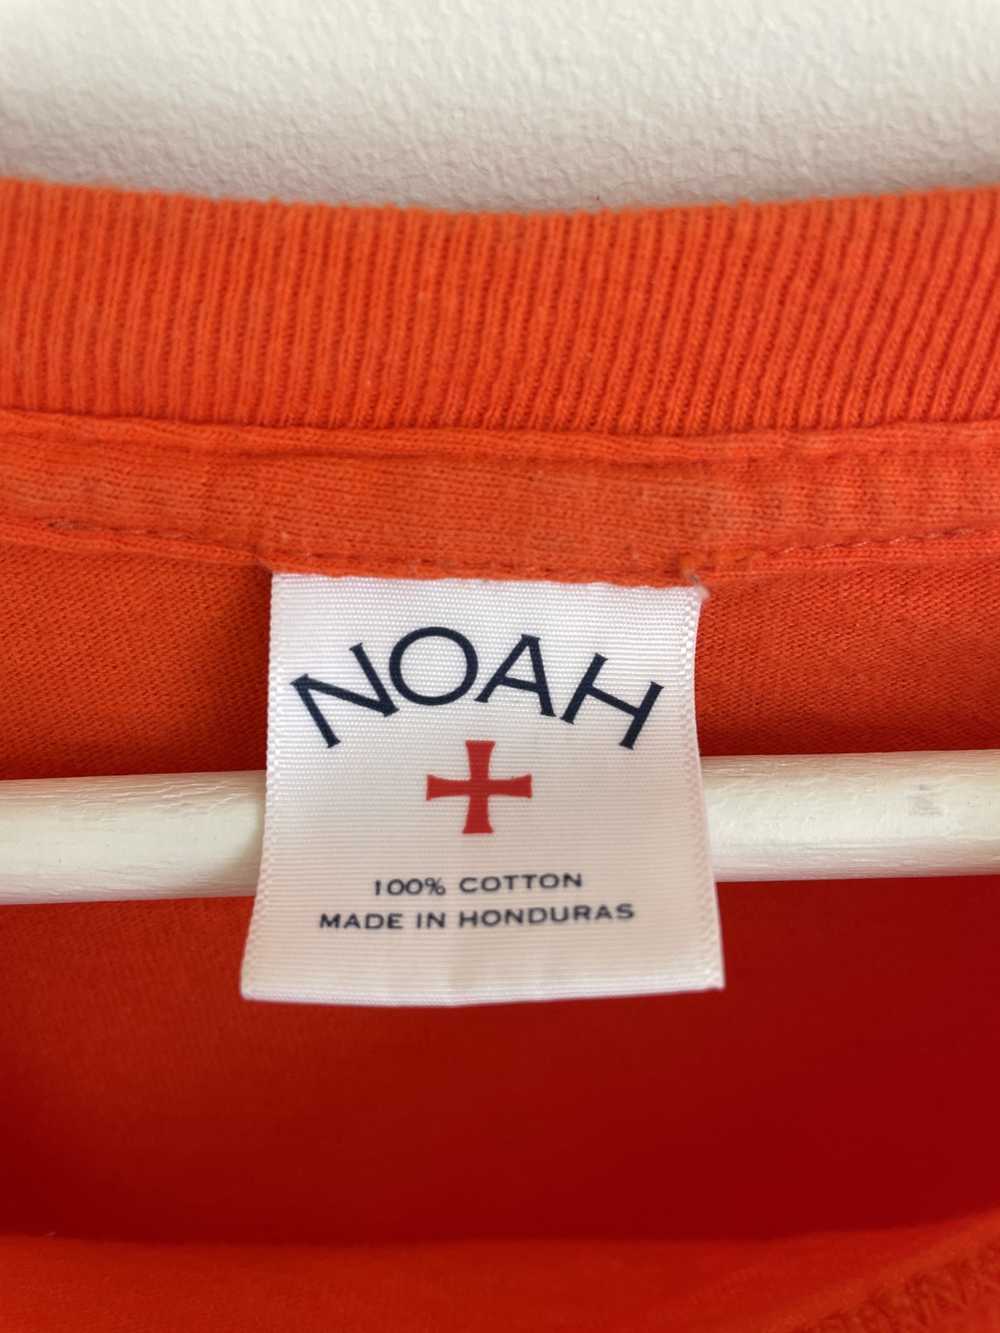 Noah Noah flowers LS t shirt orange floral - image 3